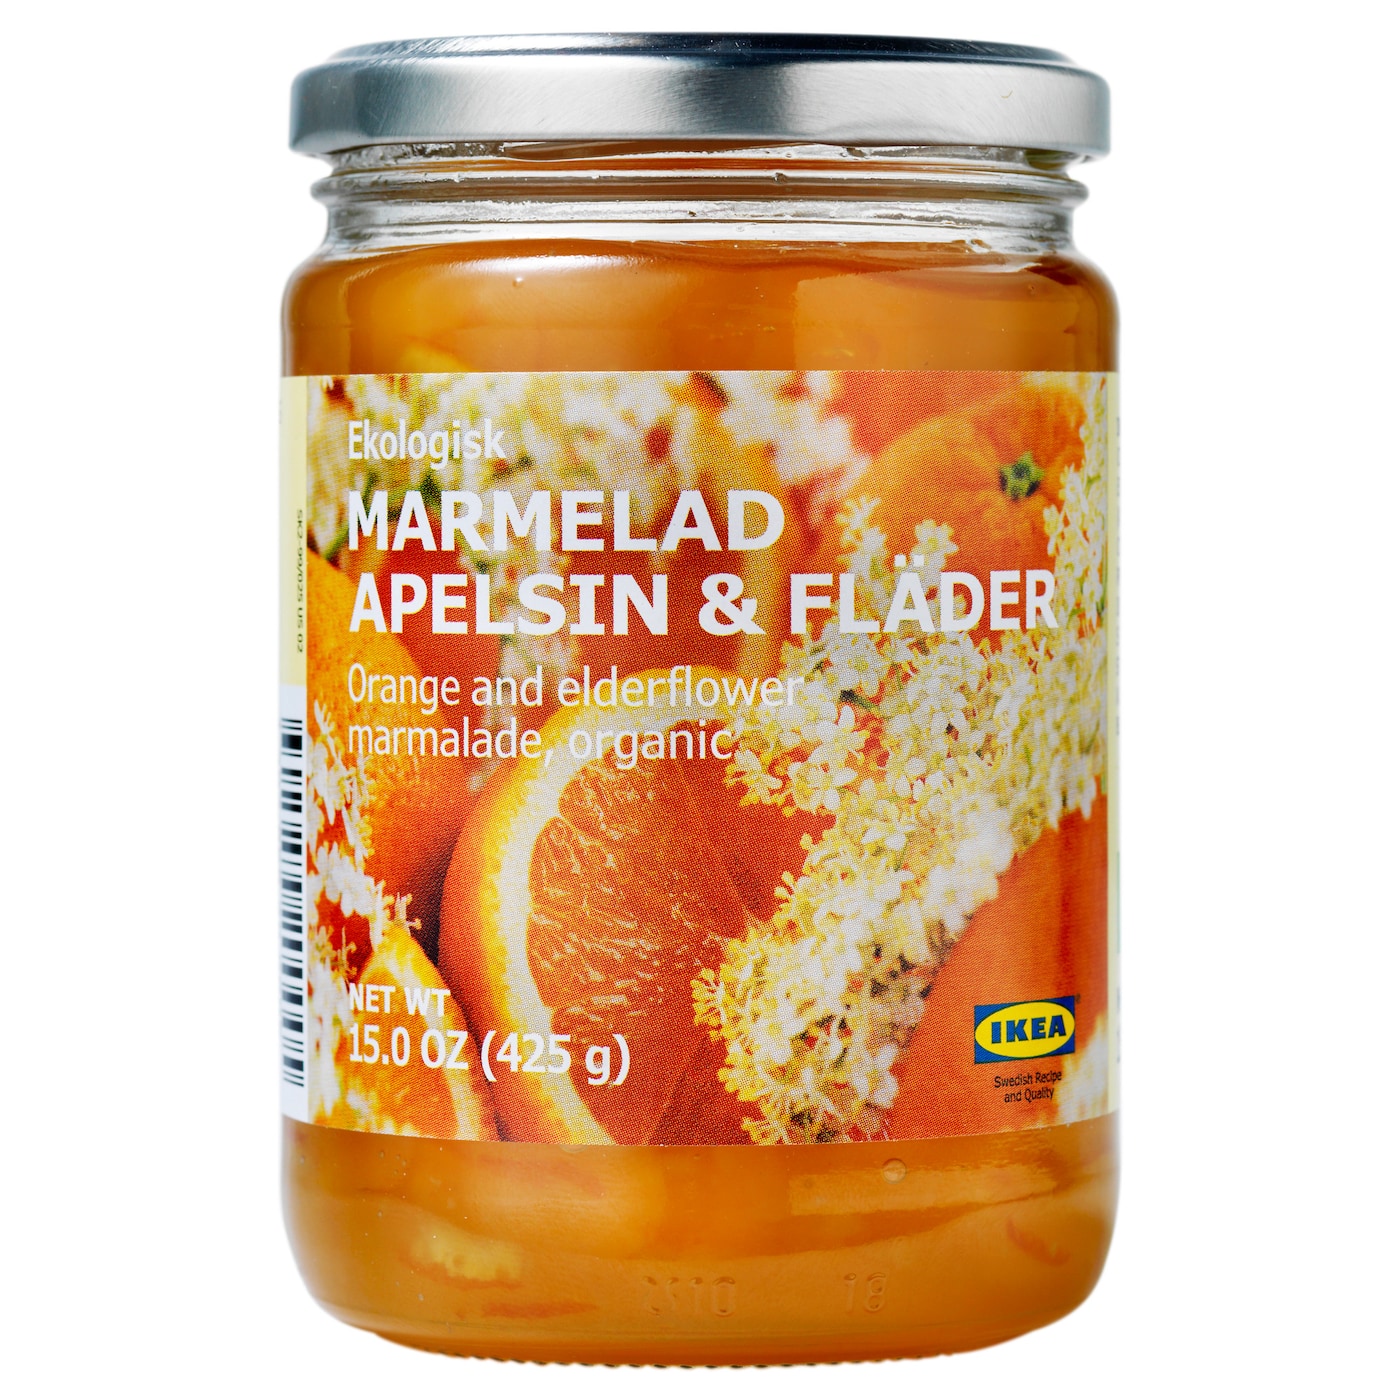 MARMELAD APELSIN & FLÄDER Джем из апельсина и бузины